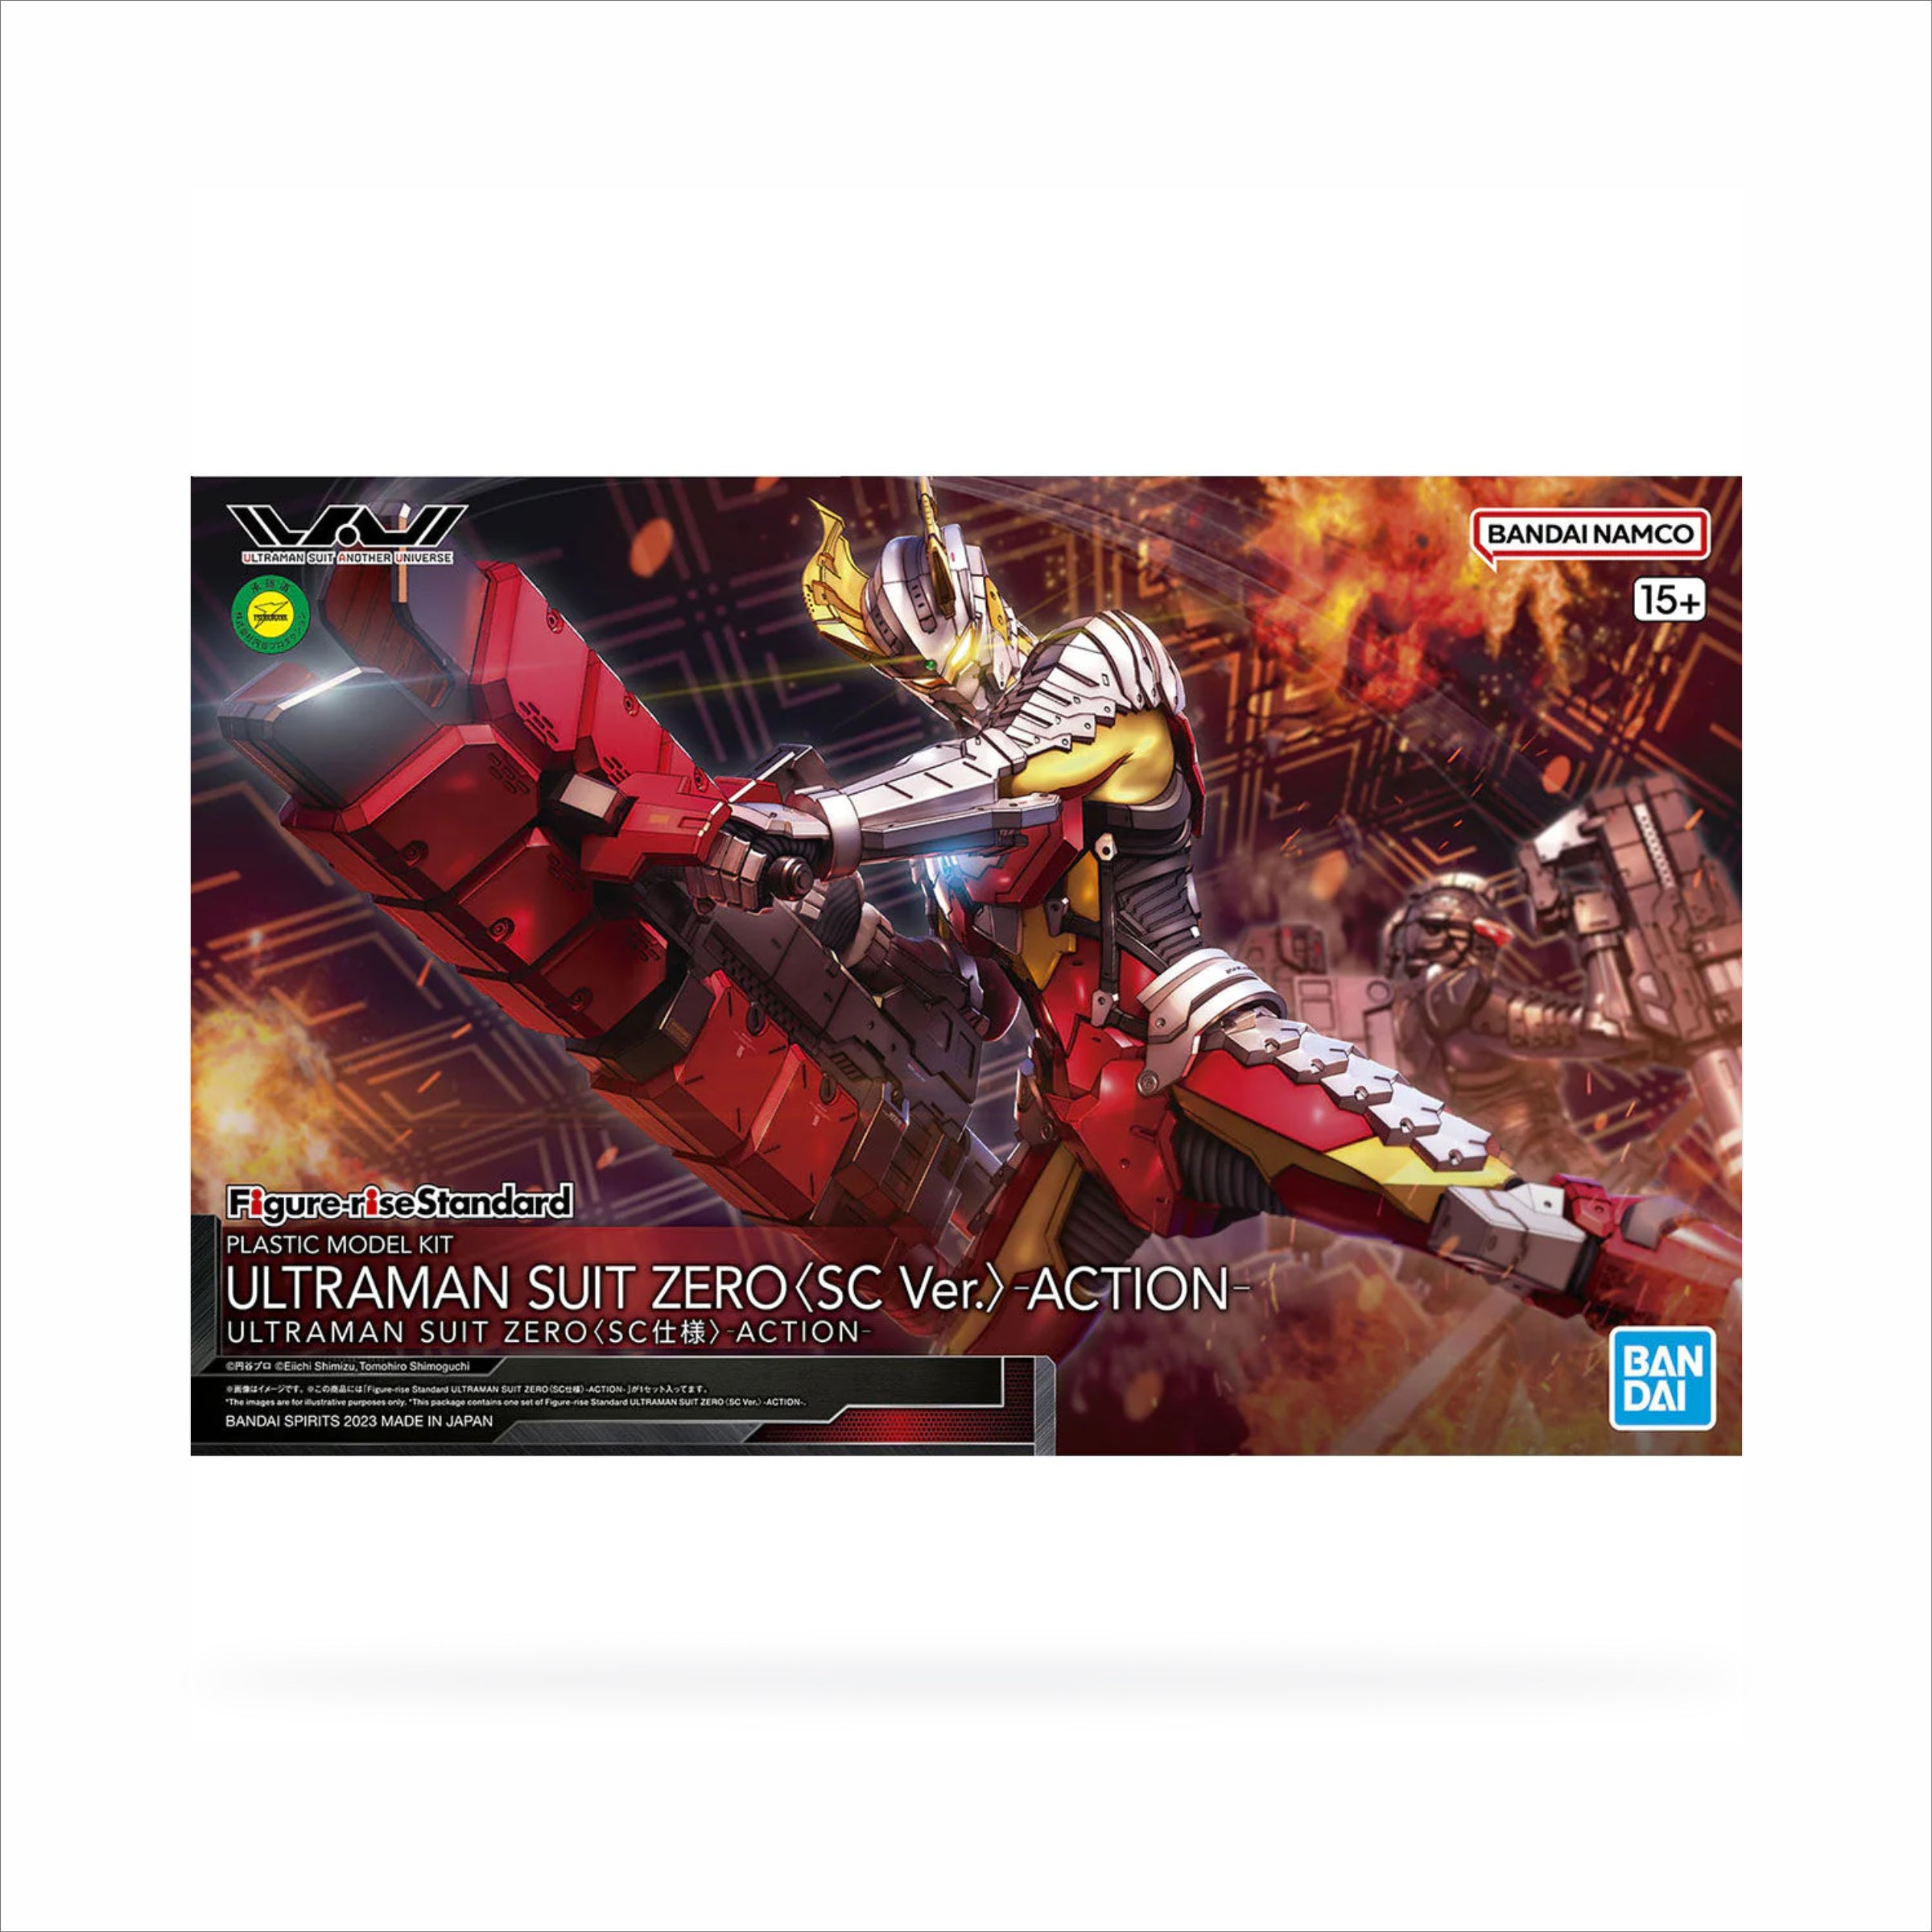 Figure-rise Standard Ultraman Suit Zero [SC specification] -Action-